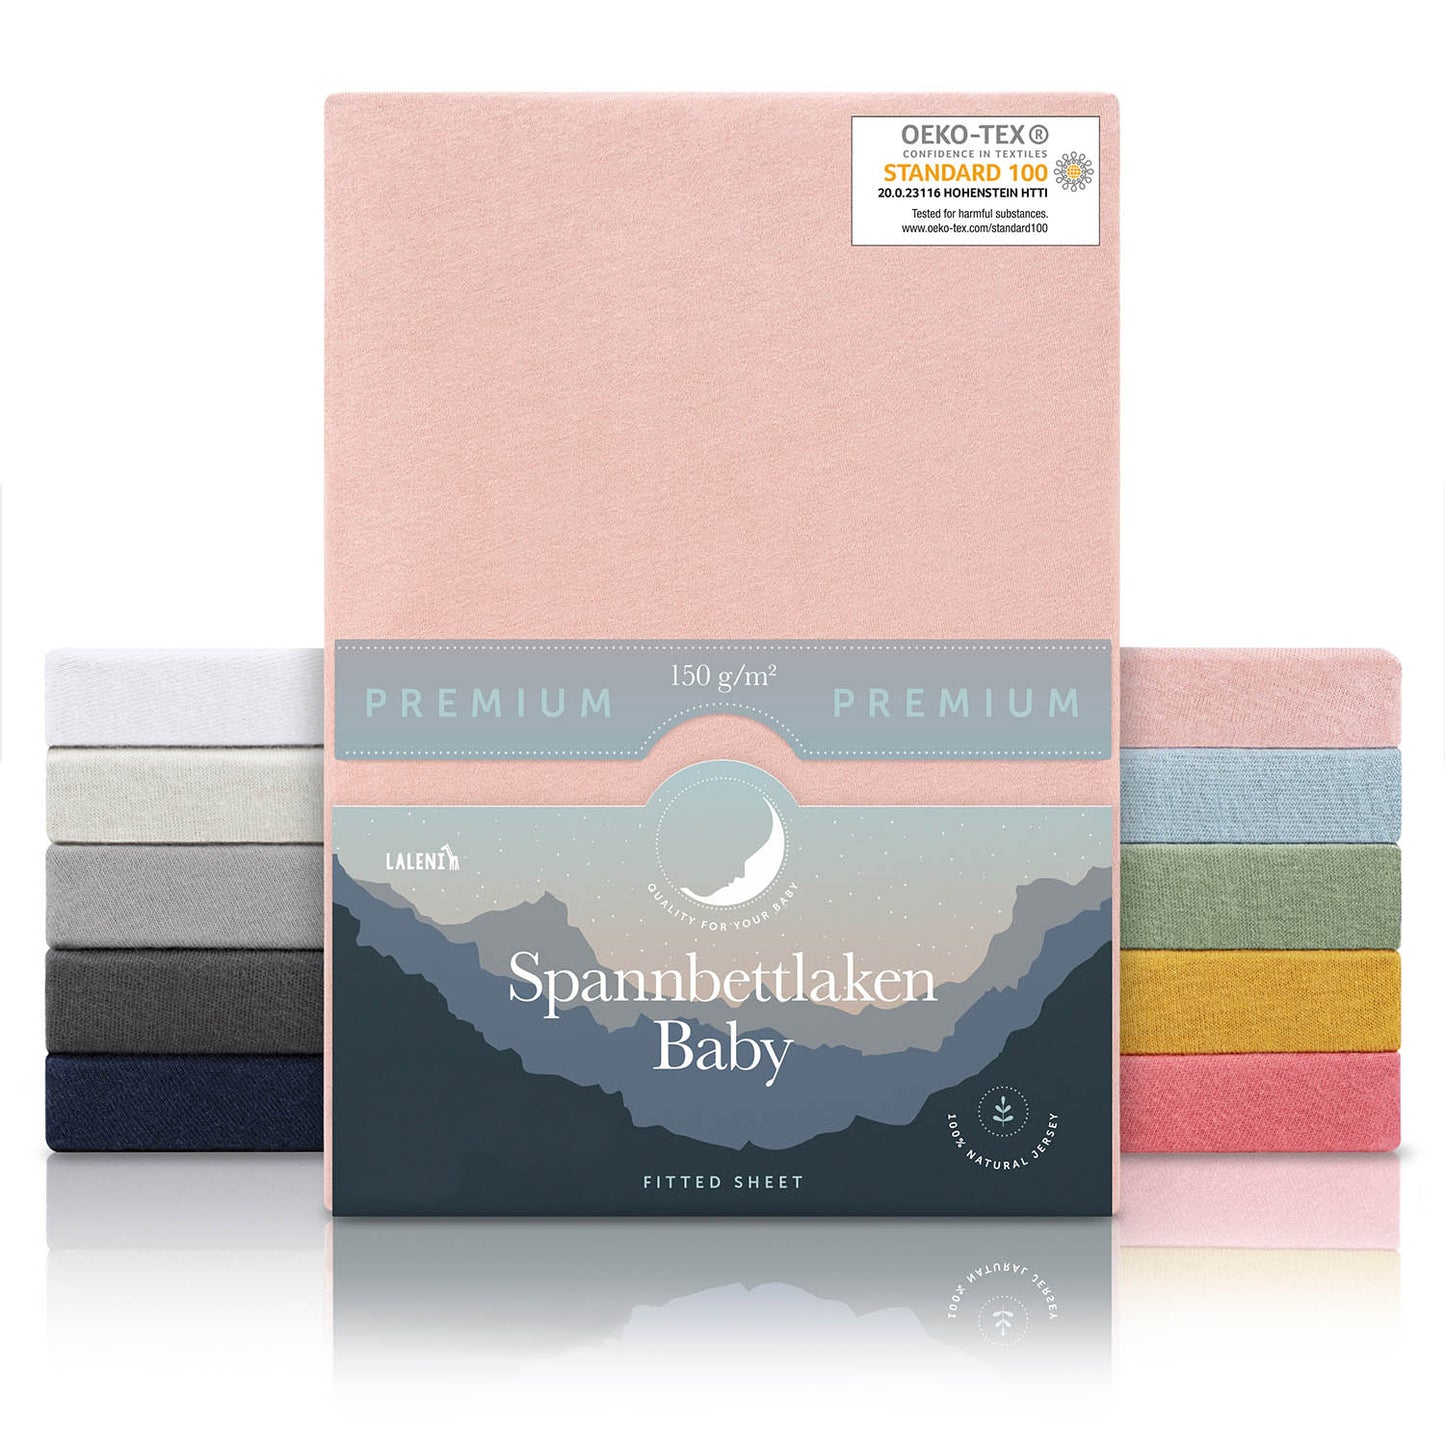 Verpackung von rose Baby-Spannbettlaken mit OEKO-TEX Siegel und Angabe von 150 g/m² Qualität in verschiedenen Farben präsentiert